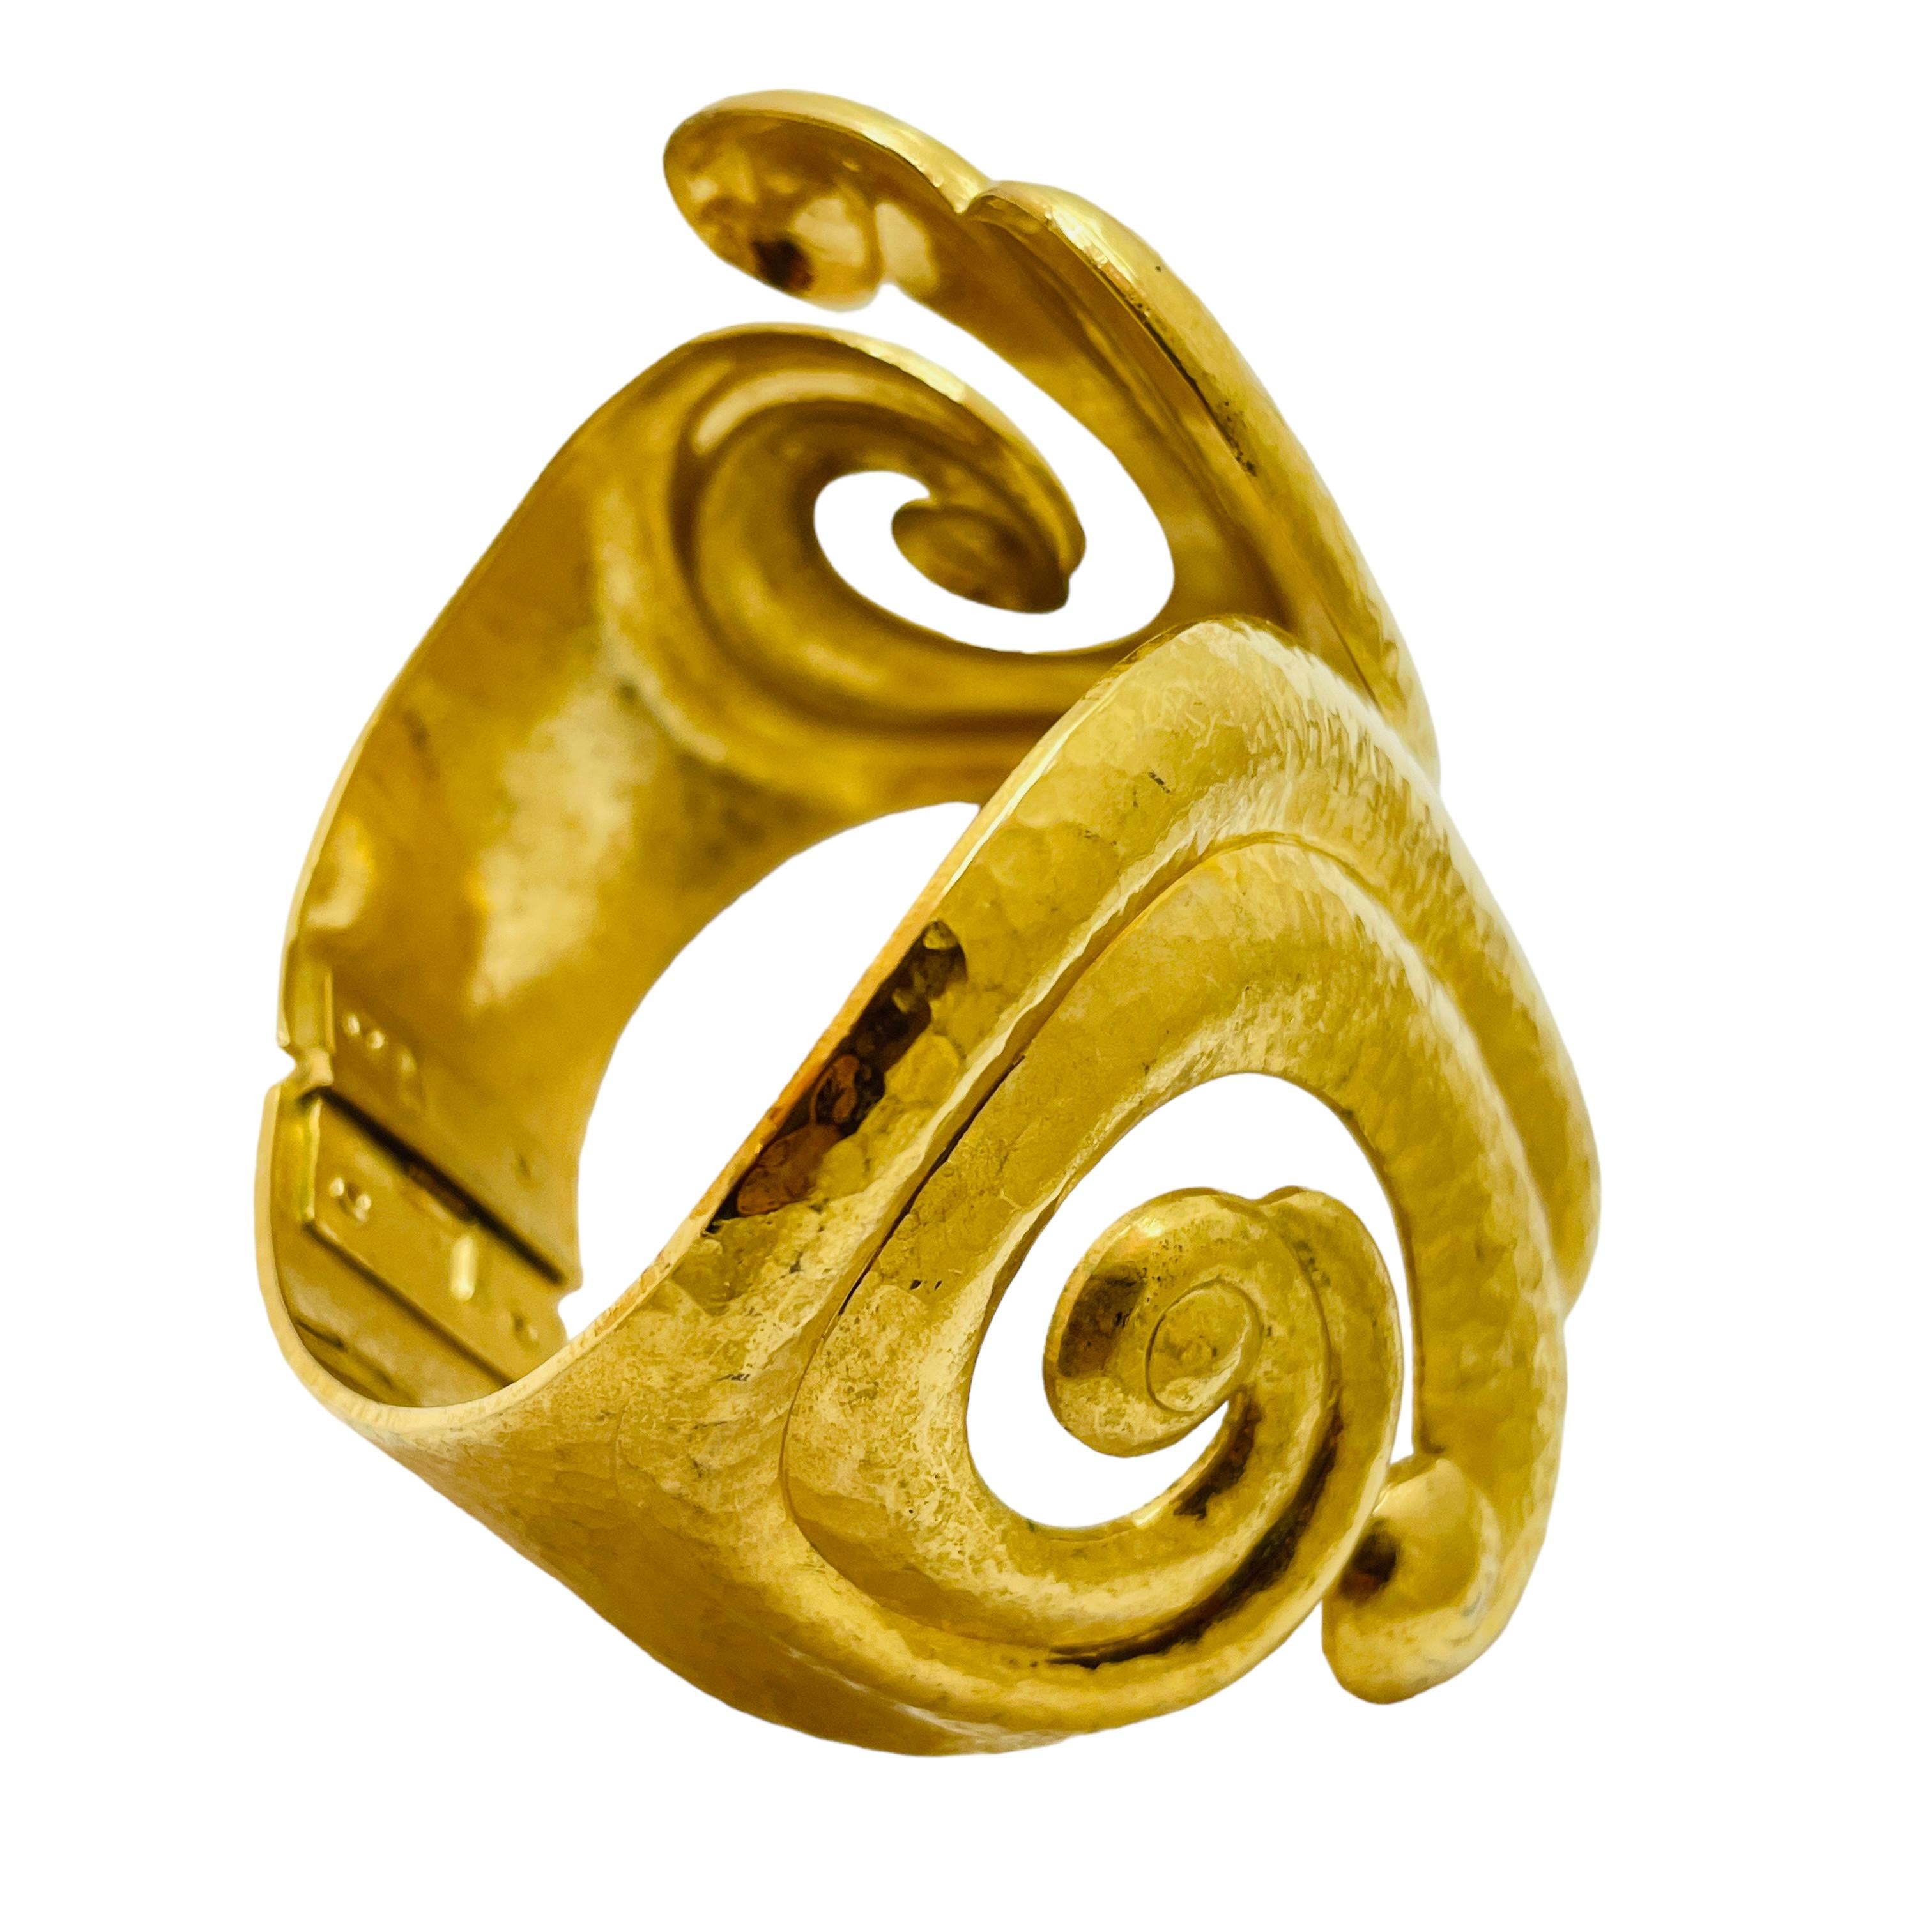 DETAILS

• signed  BARRERA for AVON

• gold tone with

• vintage designer runway bracelet

MEASUREMENTS

•

CONDITION

• good vintage condition with some signs of wear

Sku 36

❤️❤️ VINTAGE DESIGNER JEWELRY ❤️❤️

❤️❤️ ALEXANDER’S BOUTIQUE ❤️❤️